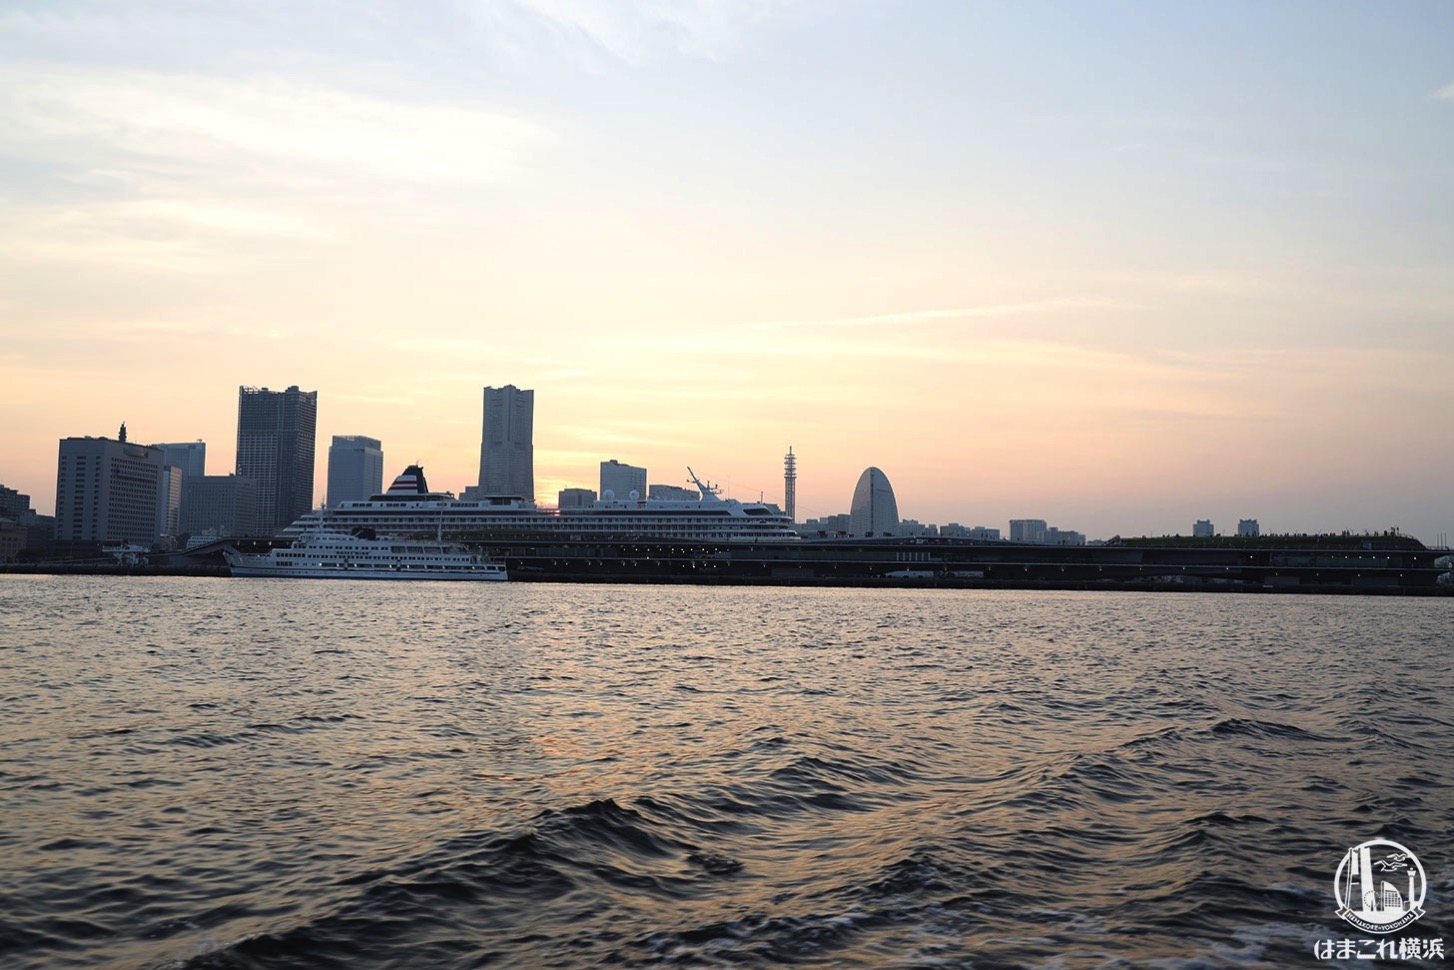 シーバス オープンデッキから見た日暮れの横浜